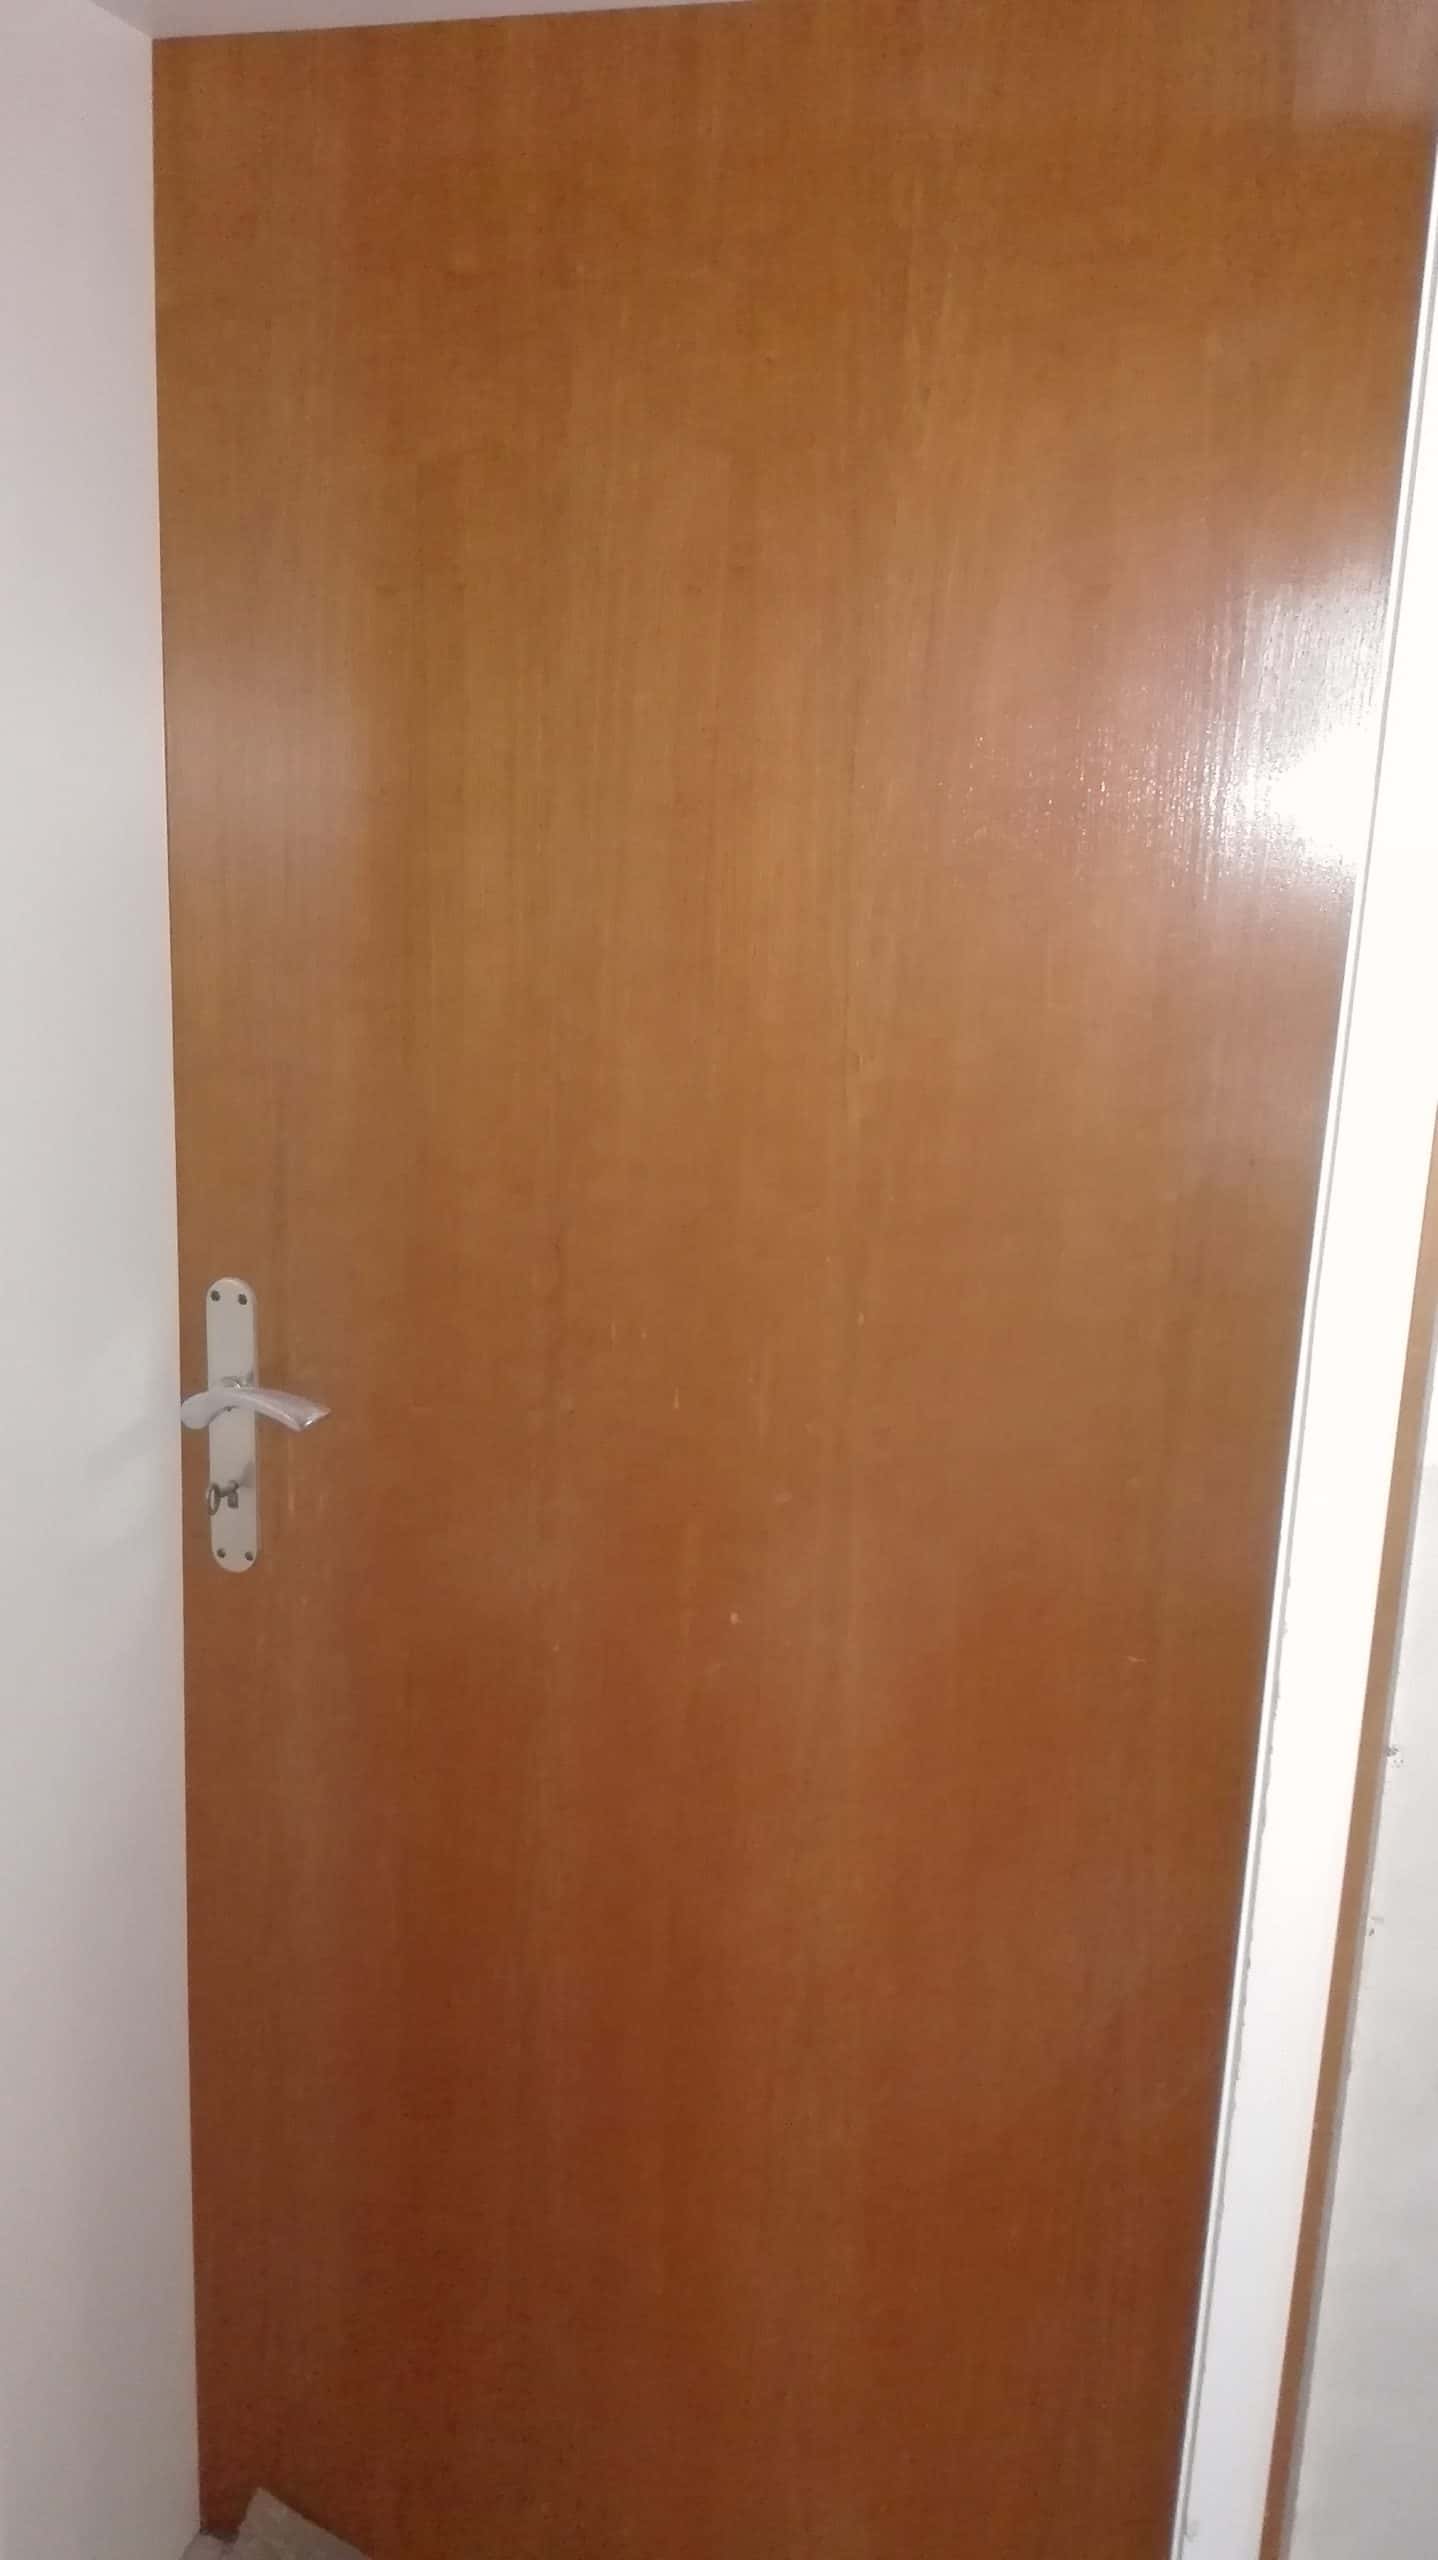 Zimmertüren aus Holz